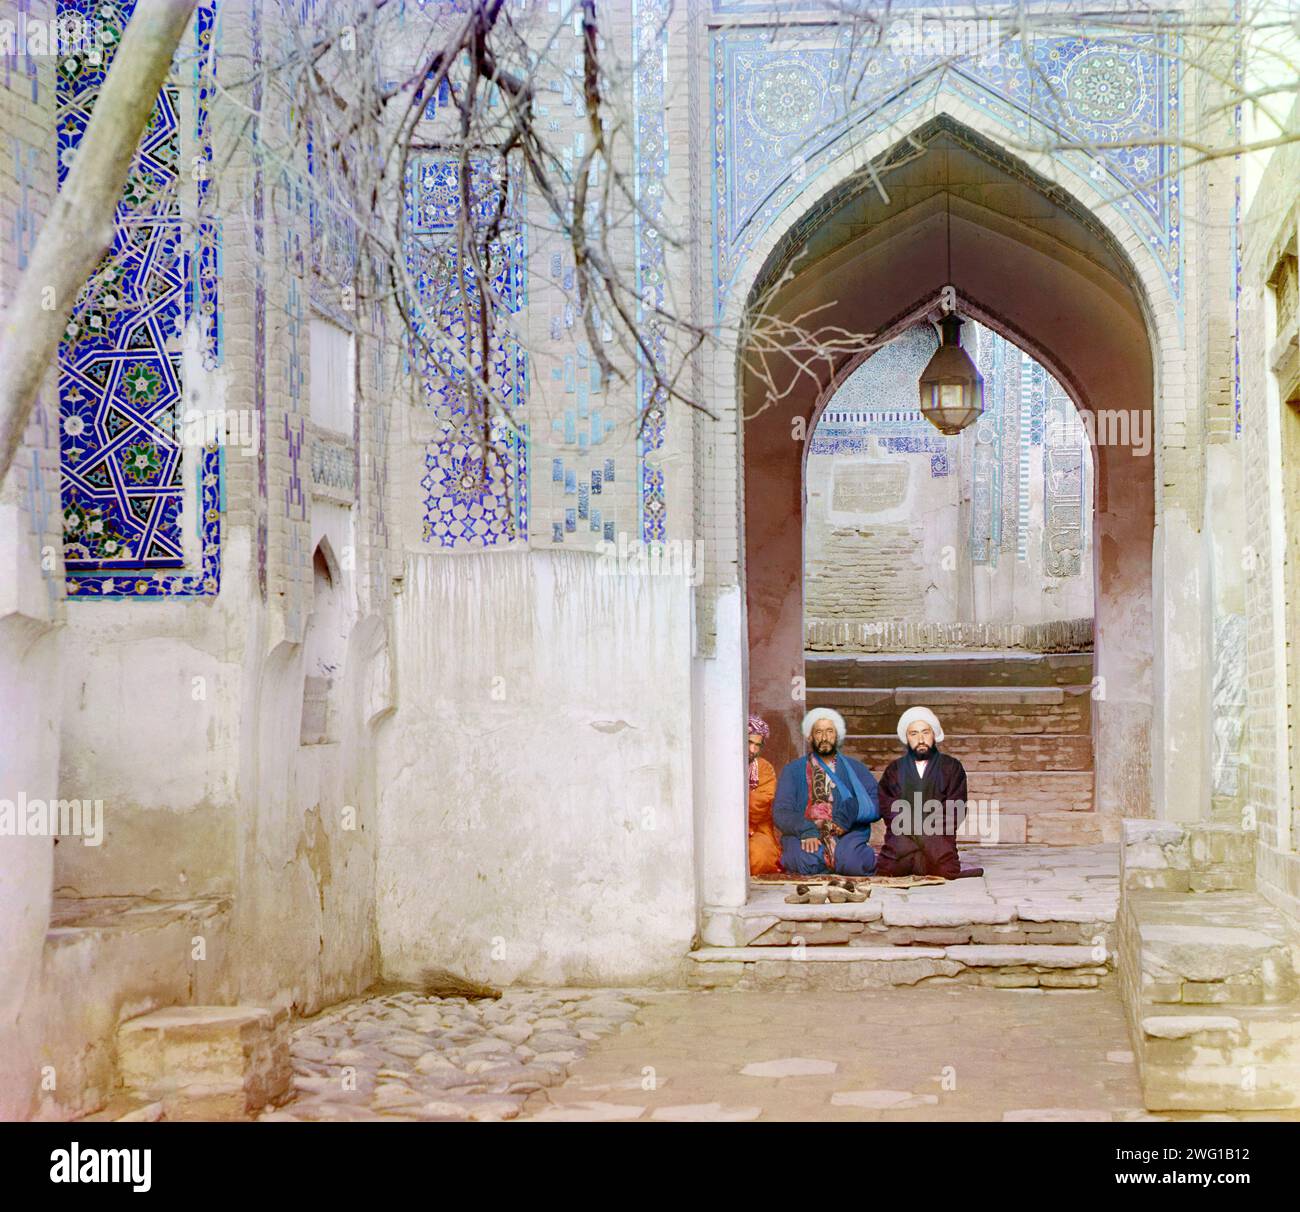 À l'entrée du Chartak supérieur (canopée) de Shakh-i Zindeh, Samarkand, entre 1905 et 1915. Hommes assis sous un arc au complexe du mausolée de Shakh-i Zindeh (Shah-i-Zinda) à Samarkand. L'un des hommes a le bras dans une écharpe. Banque D'Images